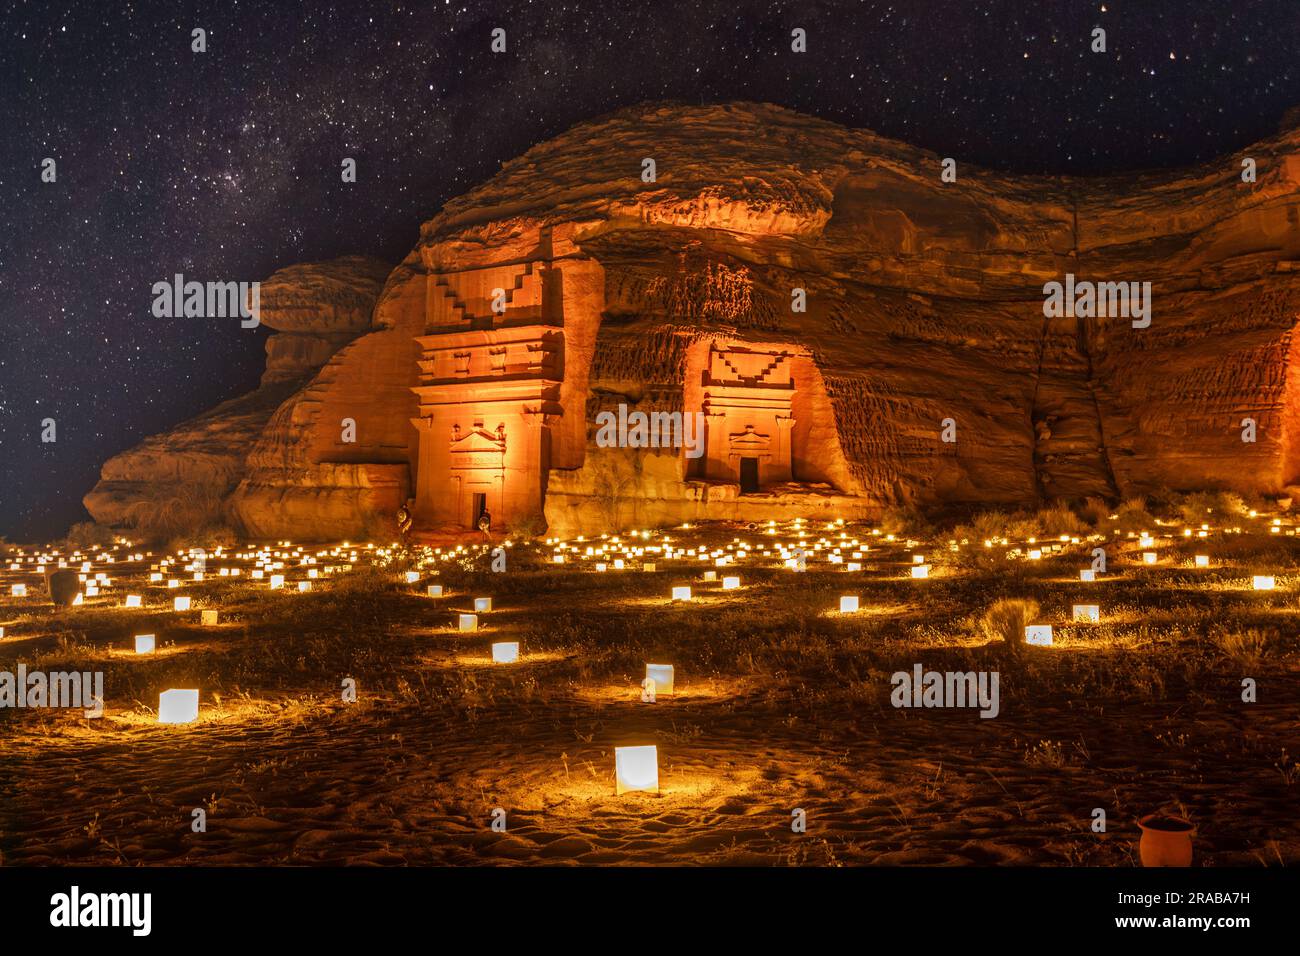 Cielo stellato sulle antiche tombe nabatee della città di Mada'in Salih Hegra illuminata, panorama notturno, al Ula, Arabia Saudita Foto Stock